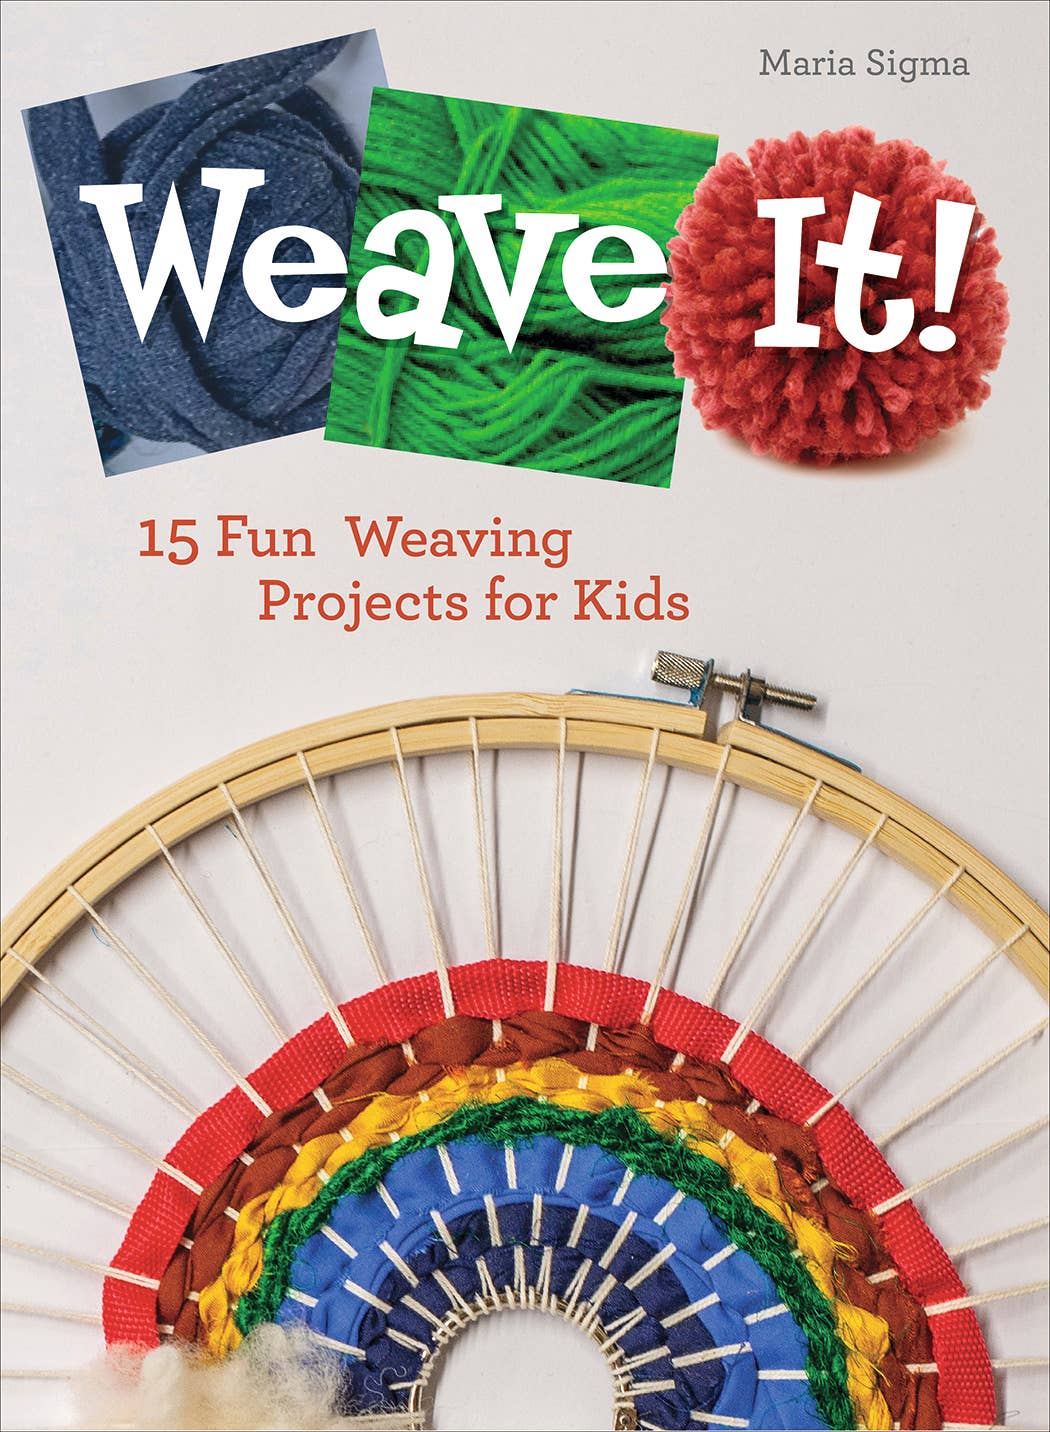 Weave It!: 15 Fun Weaving Projects for Kids